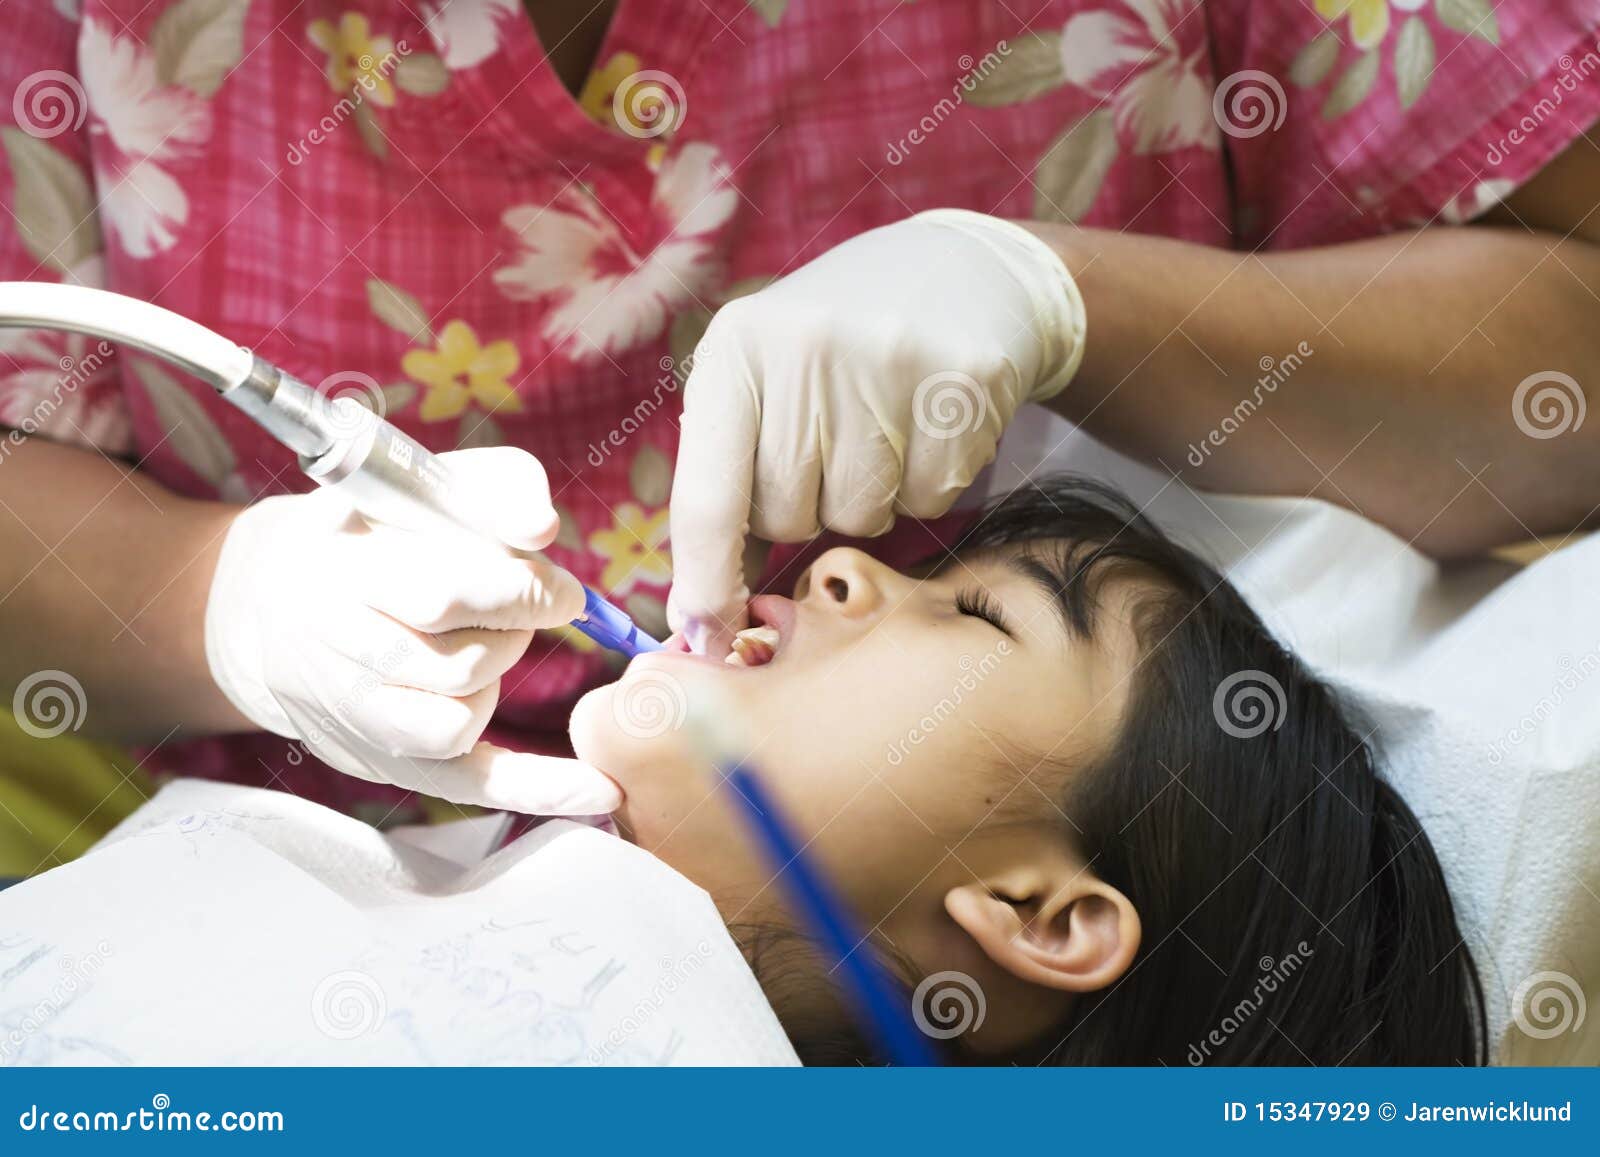 little girl having teeth cleaned at dentist